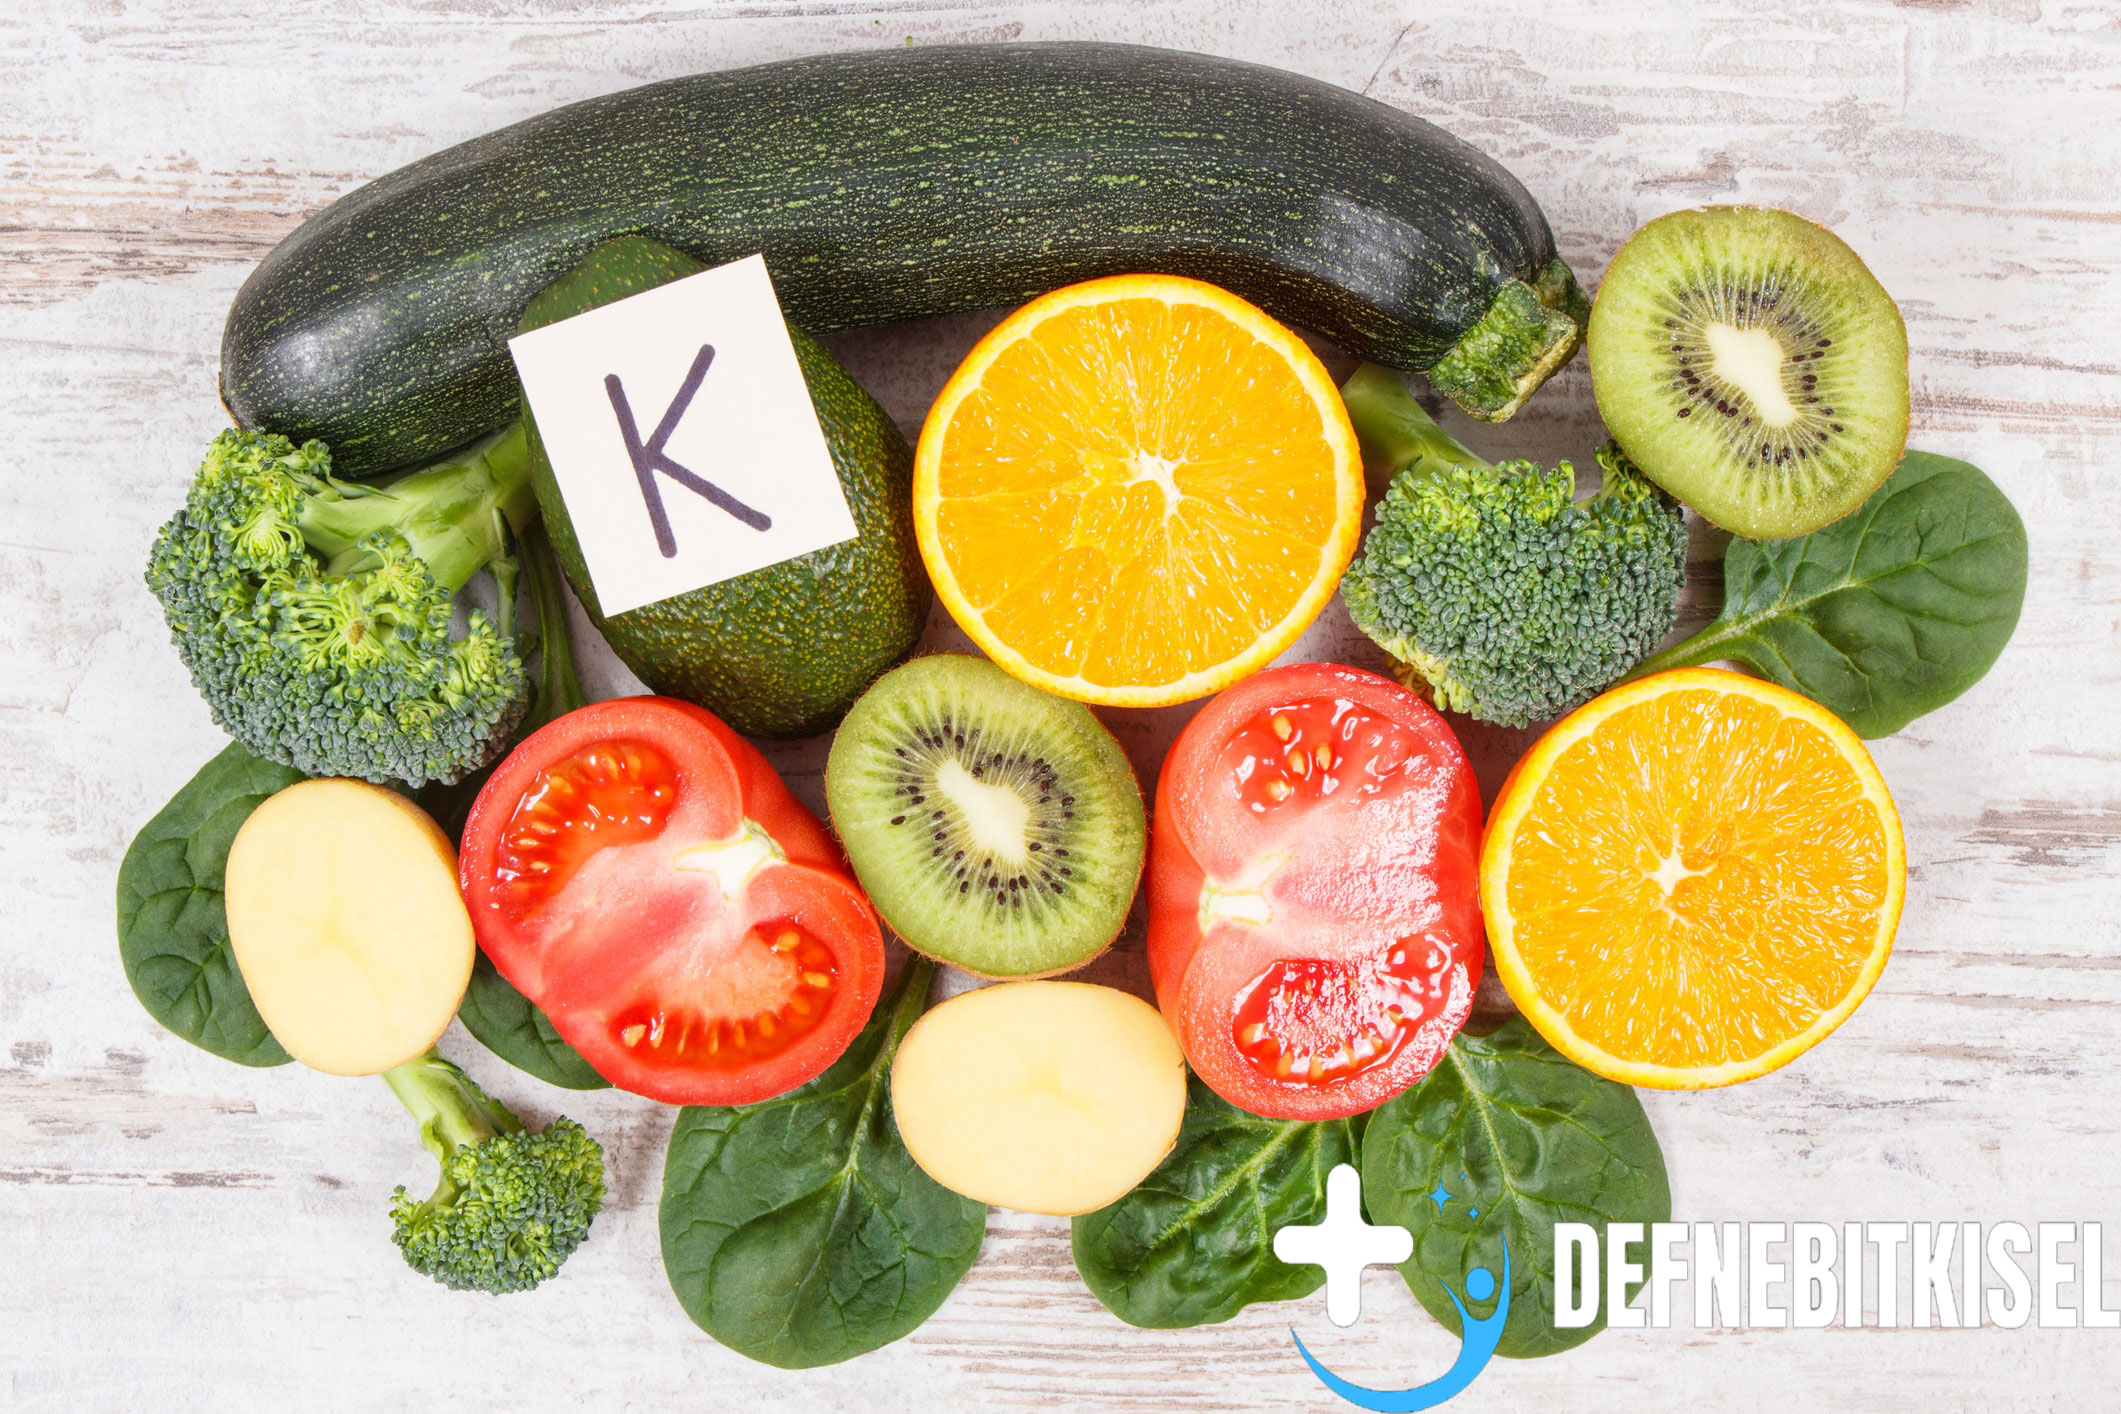 Manfaat Vitamin K dalam Mendukung Proses Pembekuan Darah